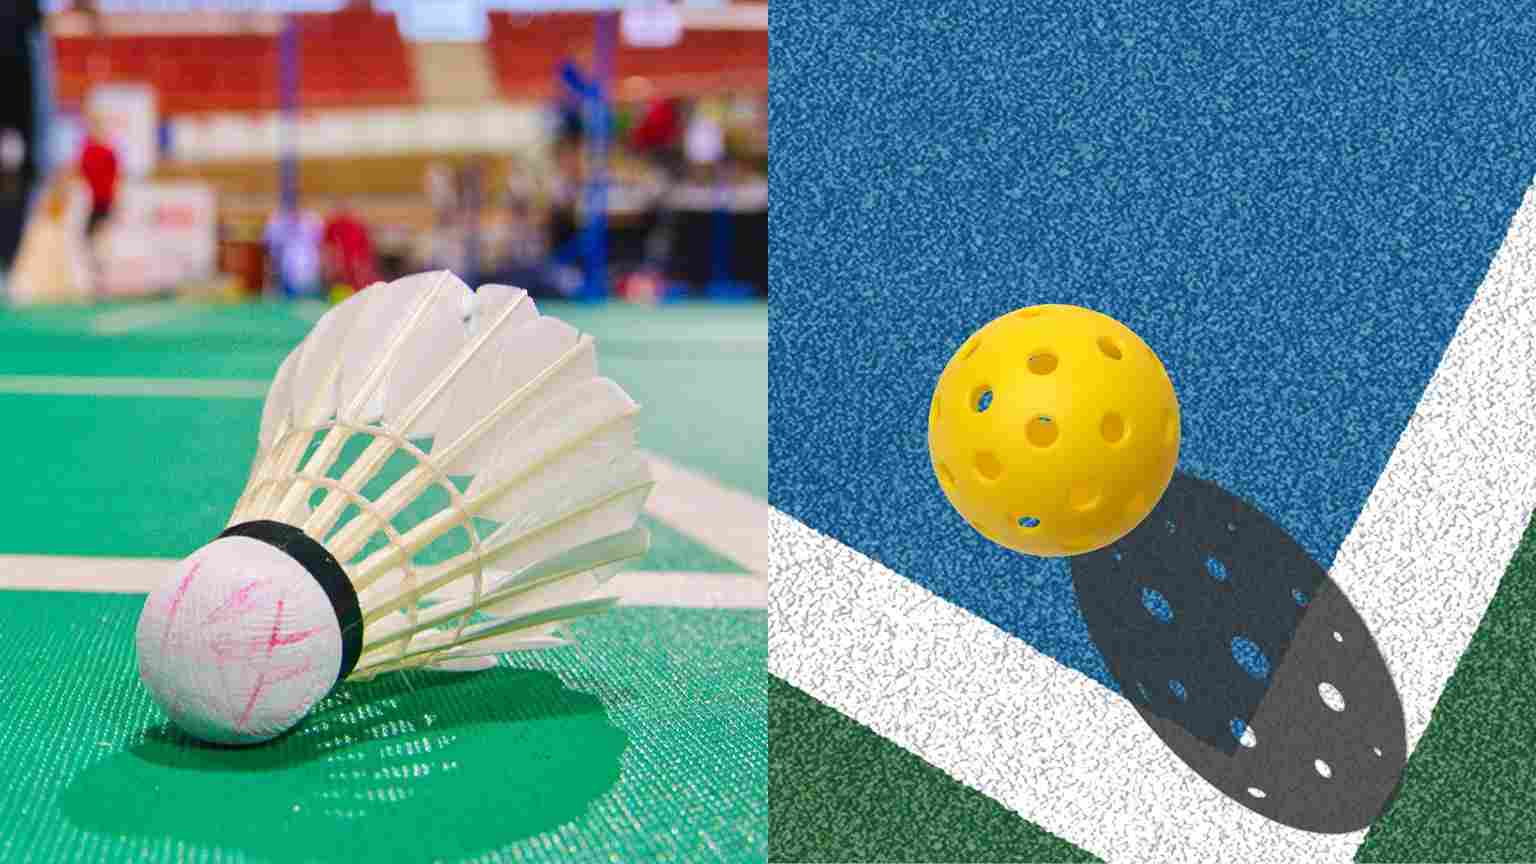 pickleball court vs badminton court